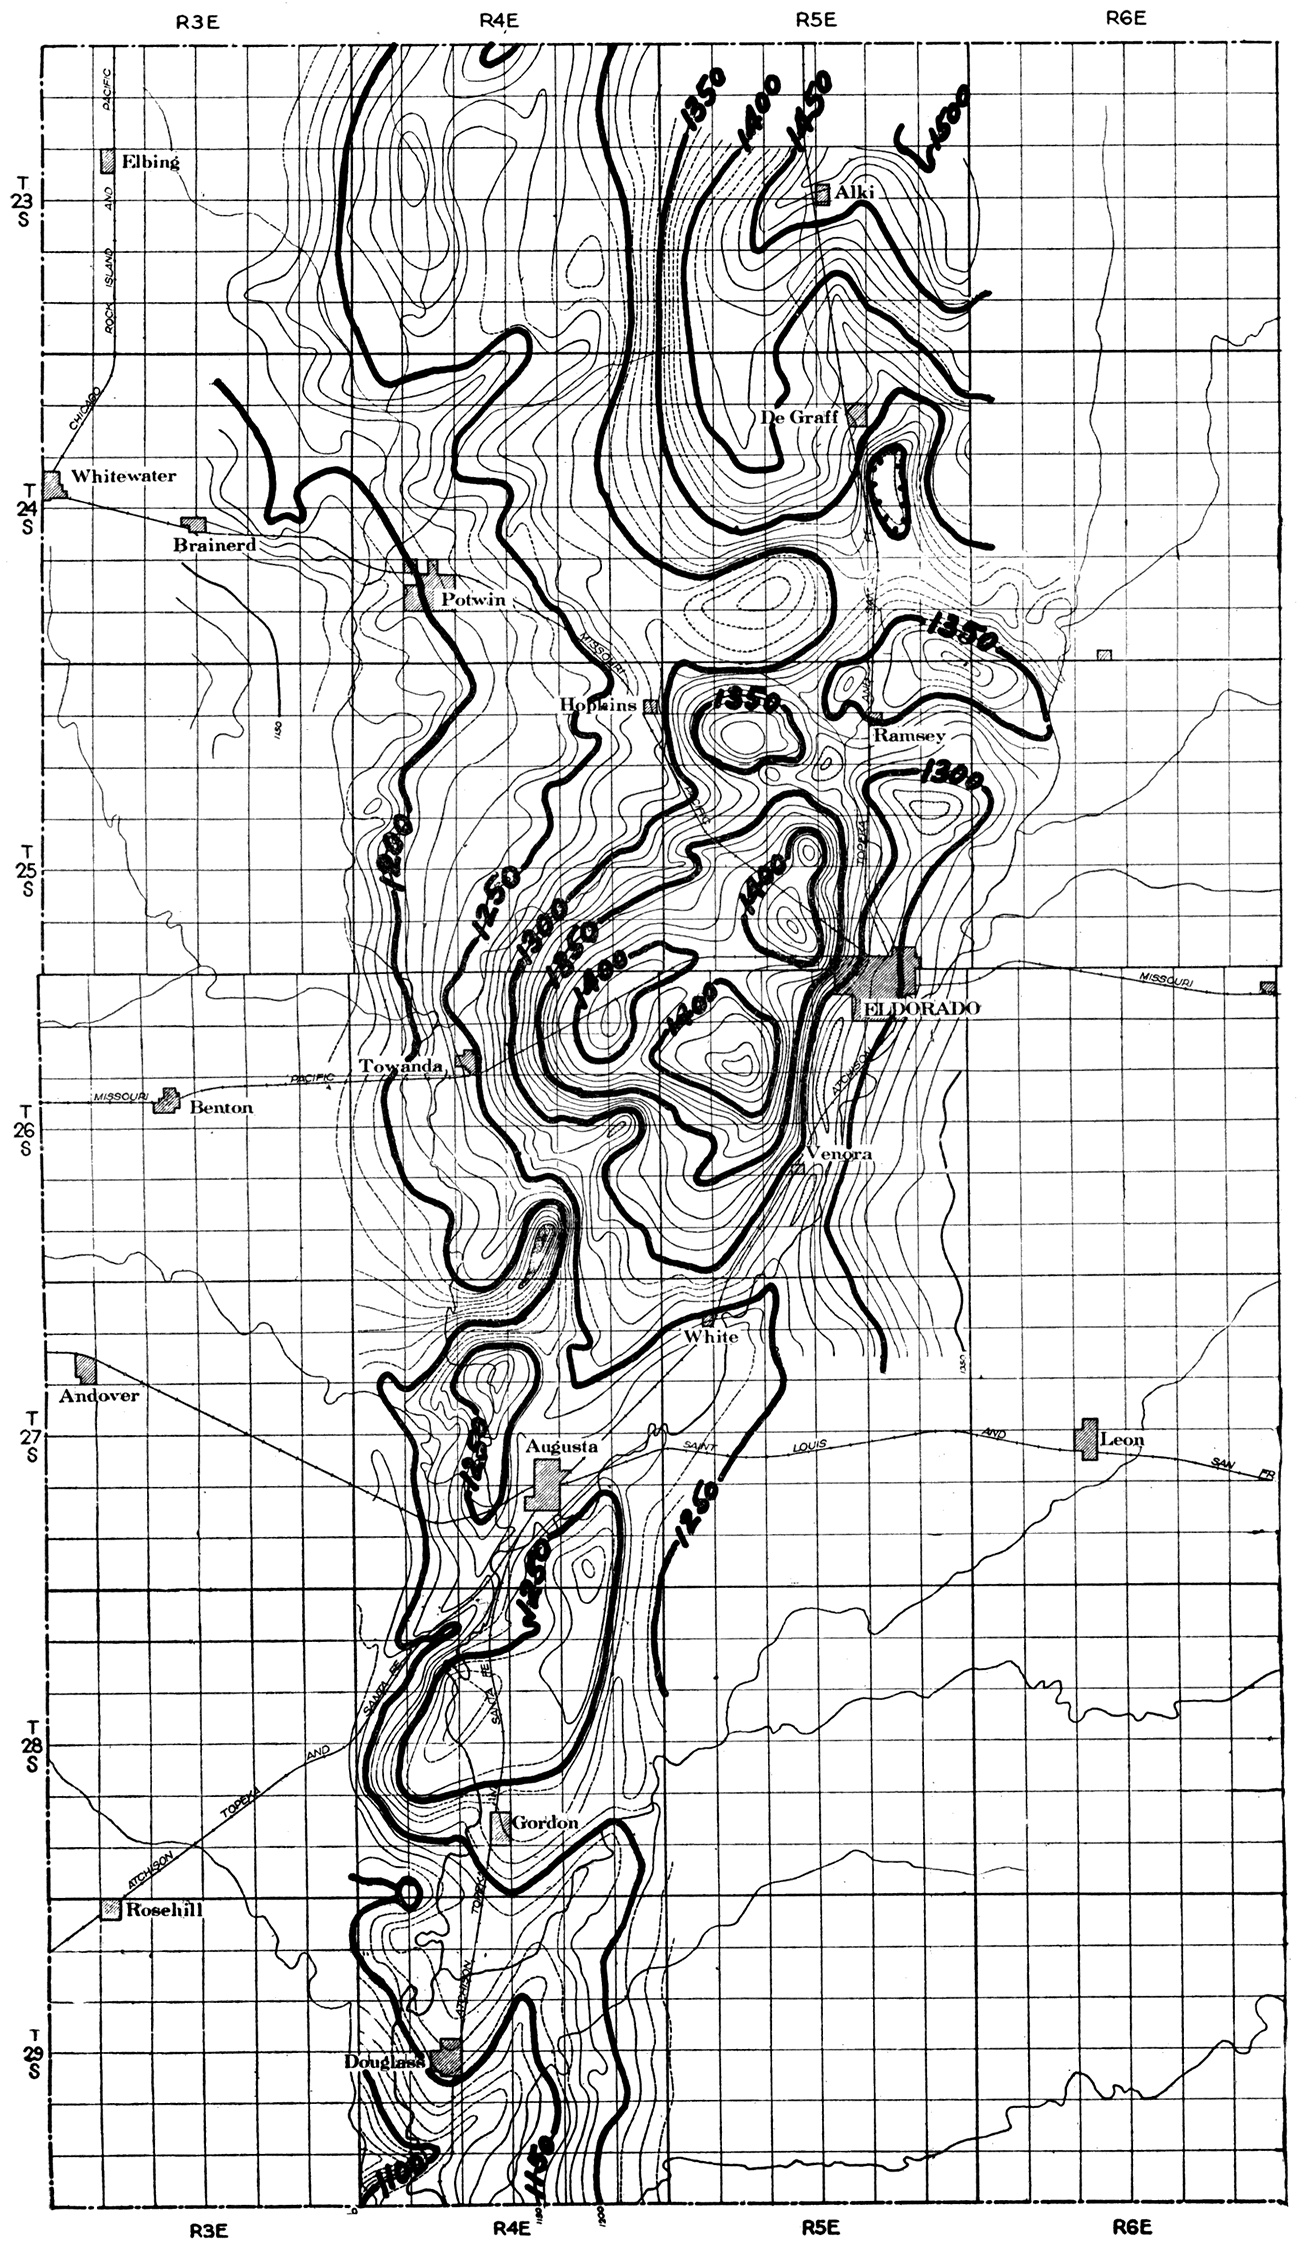 Structure map of El Dorado oil field.